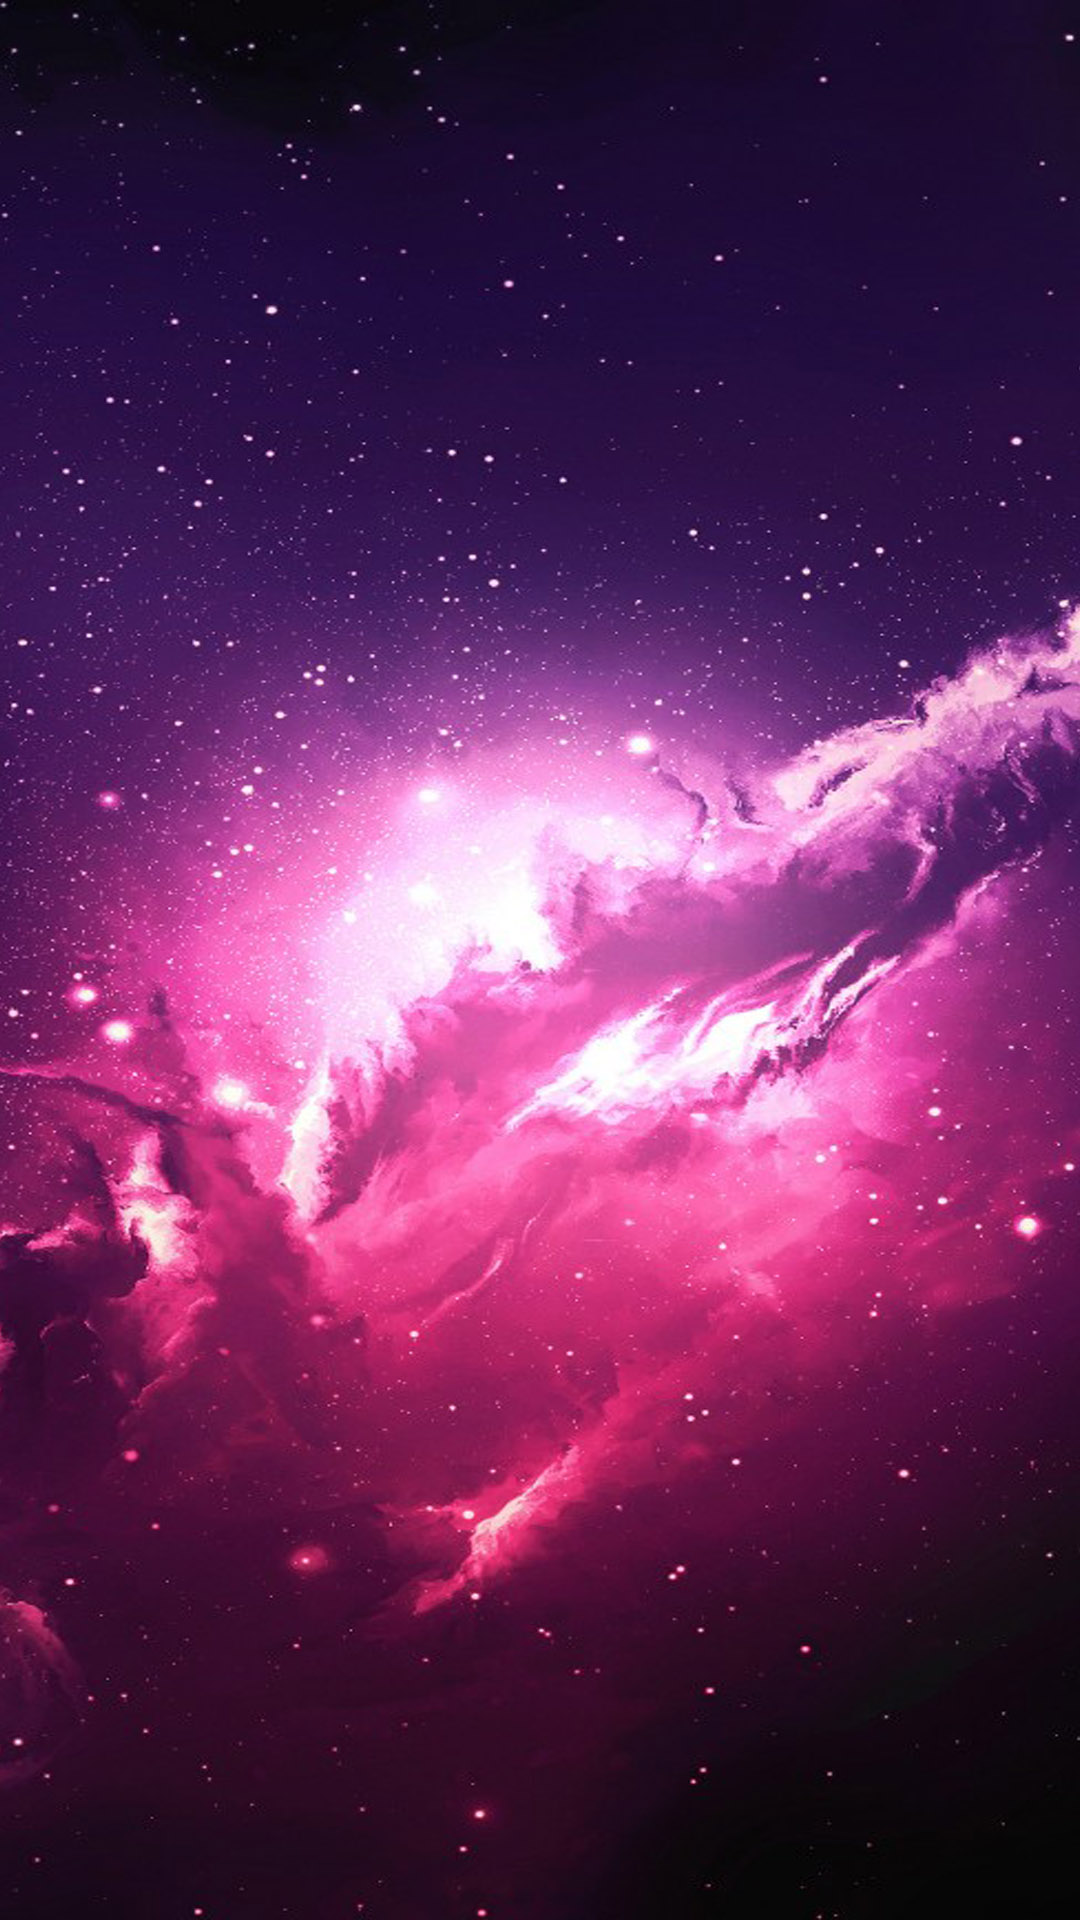 Ngắm nhìn chút màu hồng ngọt ngào của ngân hà Thiên Thần sẽ đưa bạn vào một thế giới tuyệt vời. Đây không chỉ là hình ảnh, mà còn là món quà tinh thần đích thực.